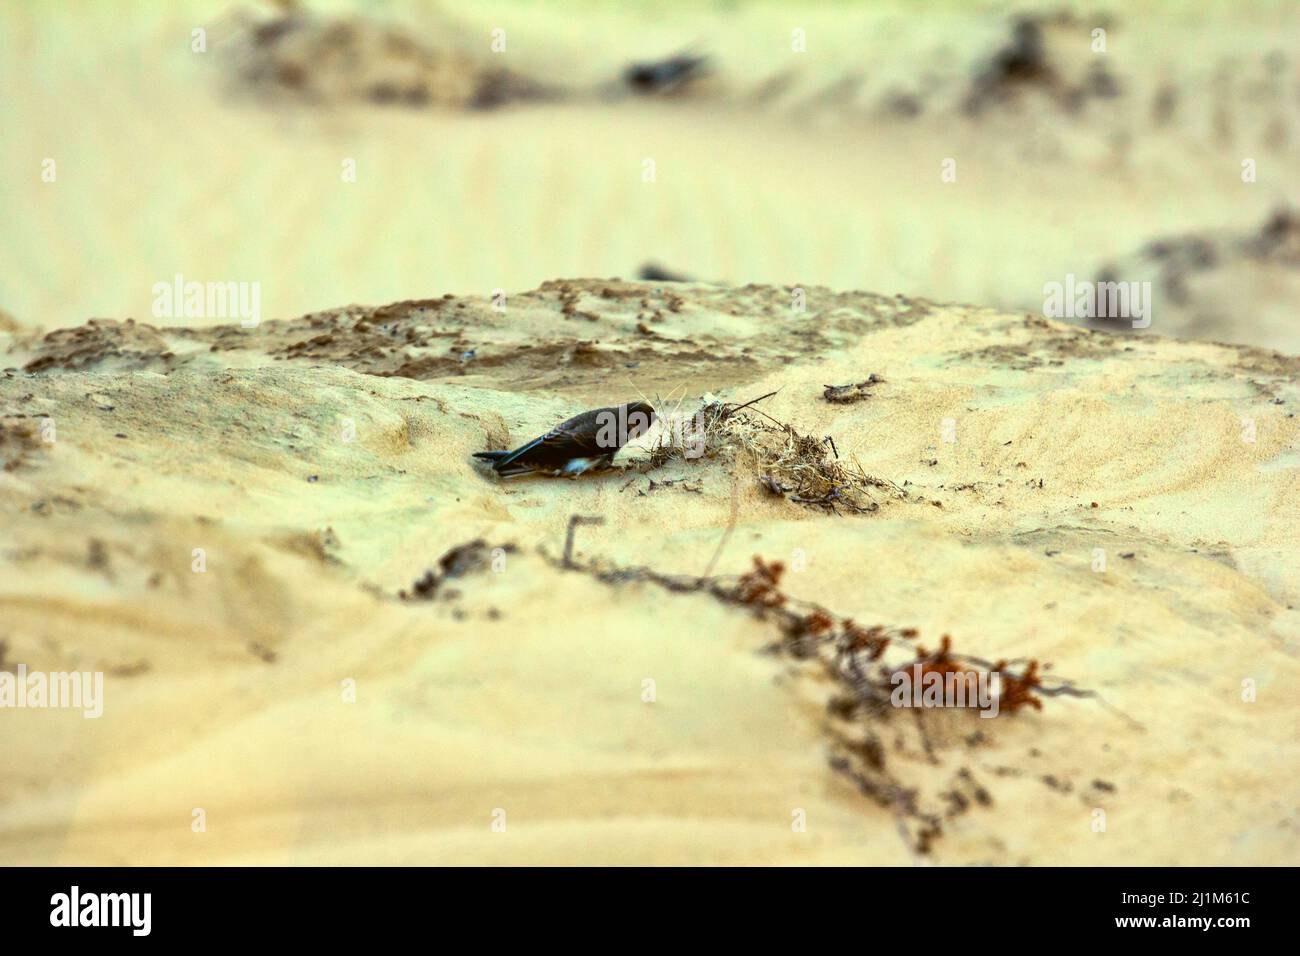 La sabbia europea martin (Riparia riparia) strappa l'erba per costruire un nido in una scogliera di sabbia. Nido costruzione comportamento di uccelli Foto Stock